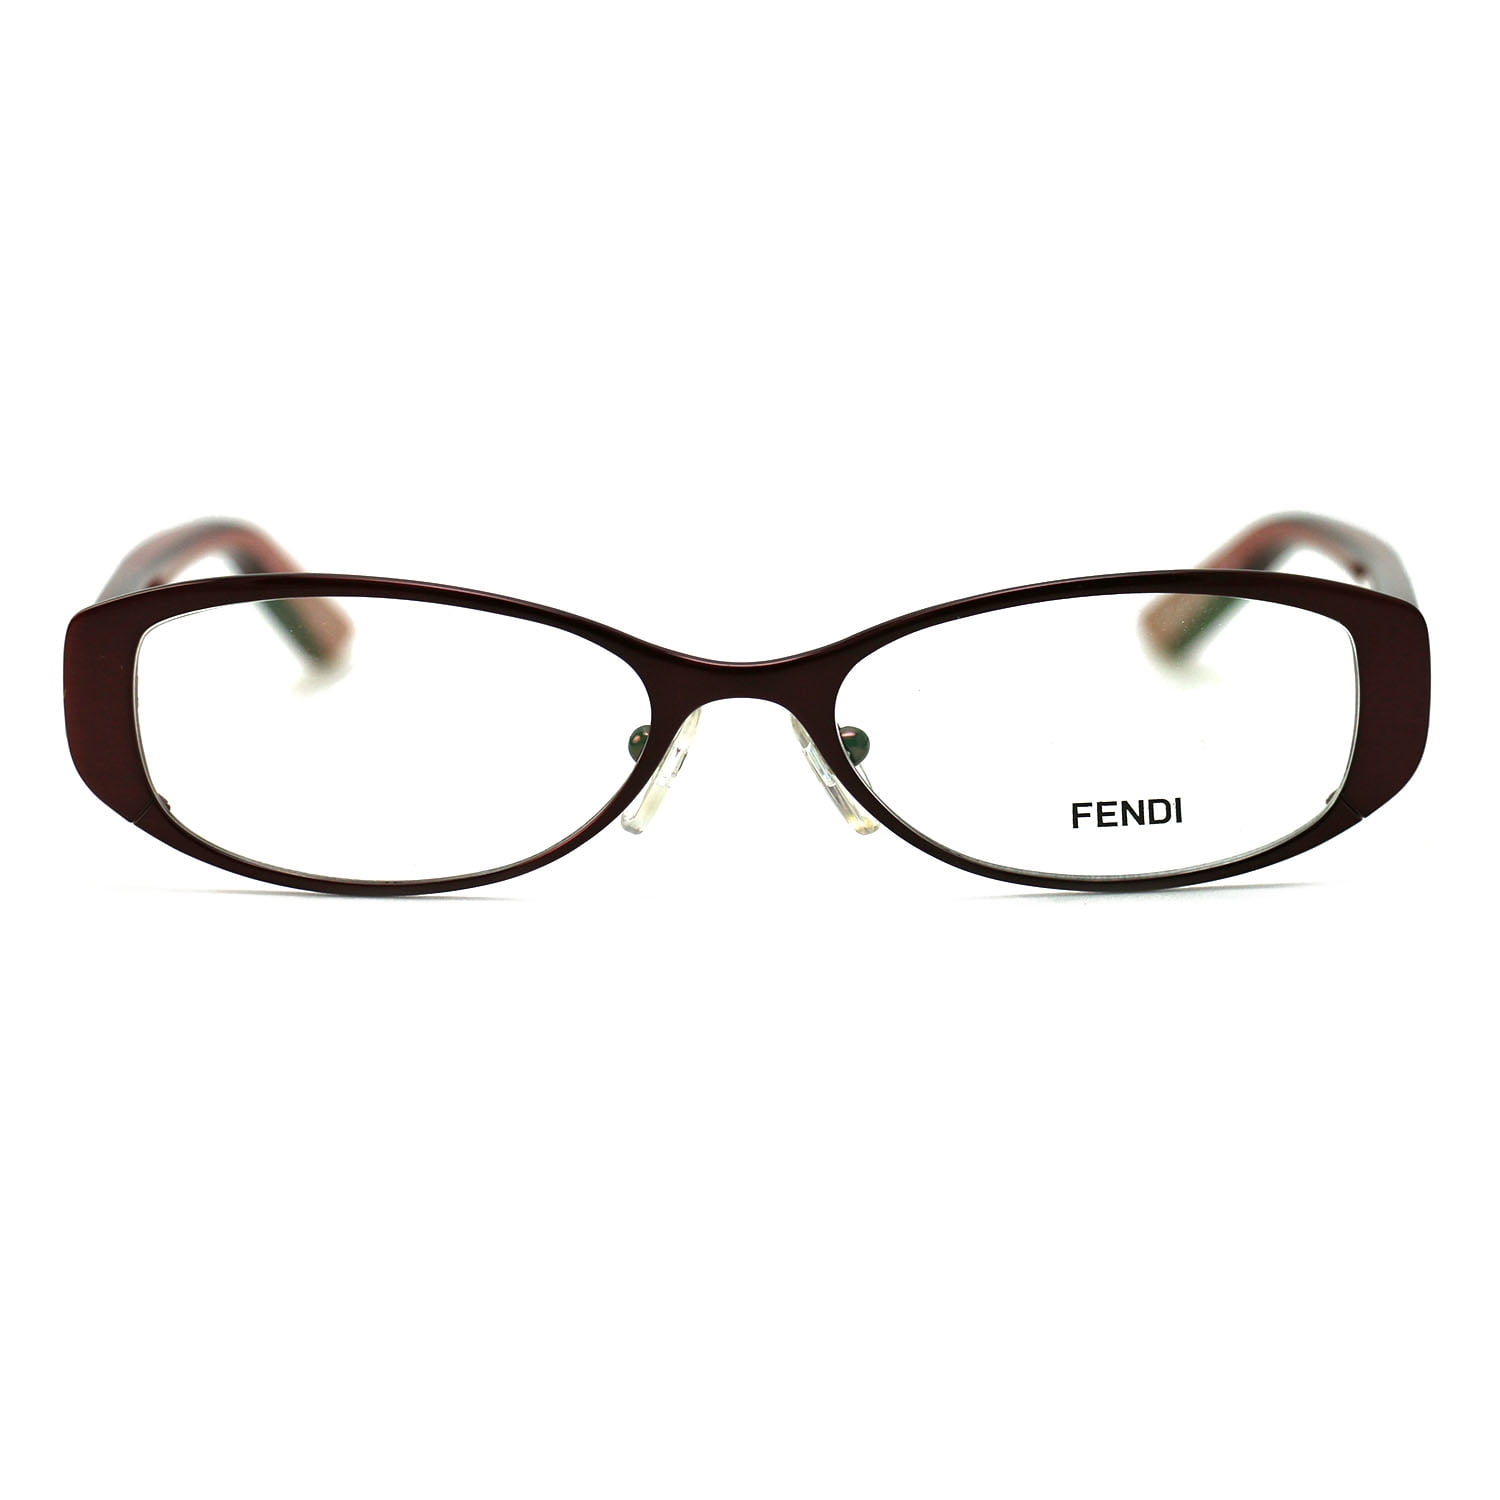 Fendi Women's Eyeglasses F899 519 Burgundy 58 16 140 Frames Oval